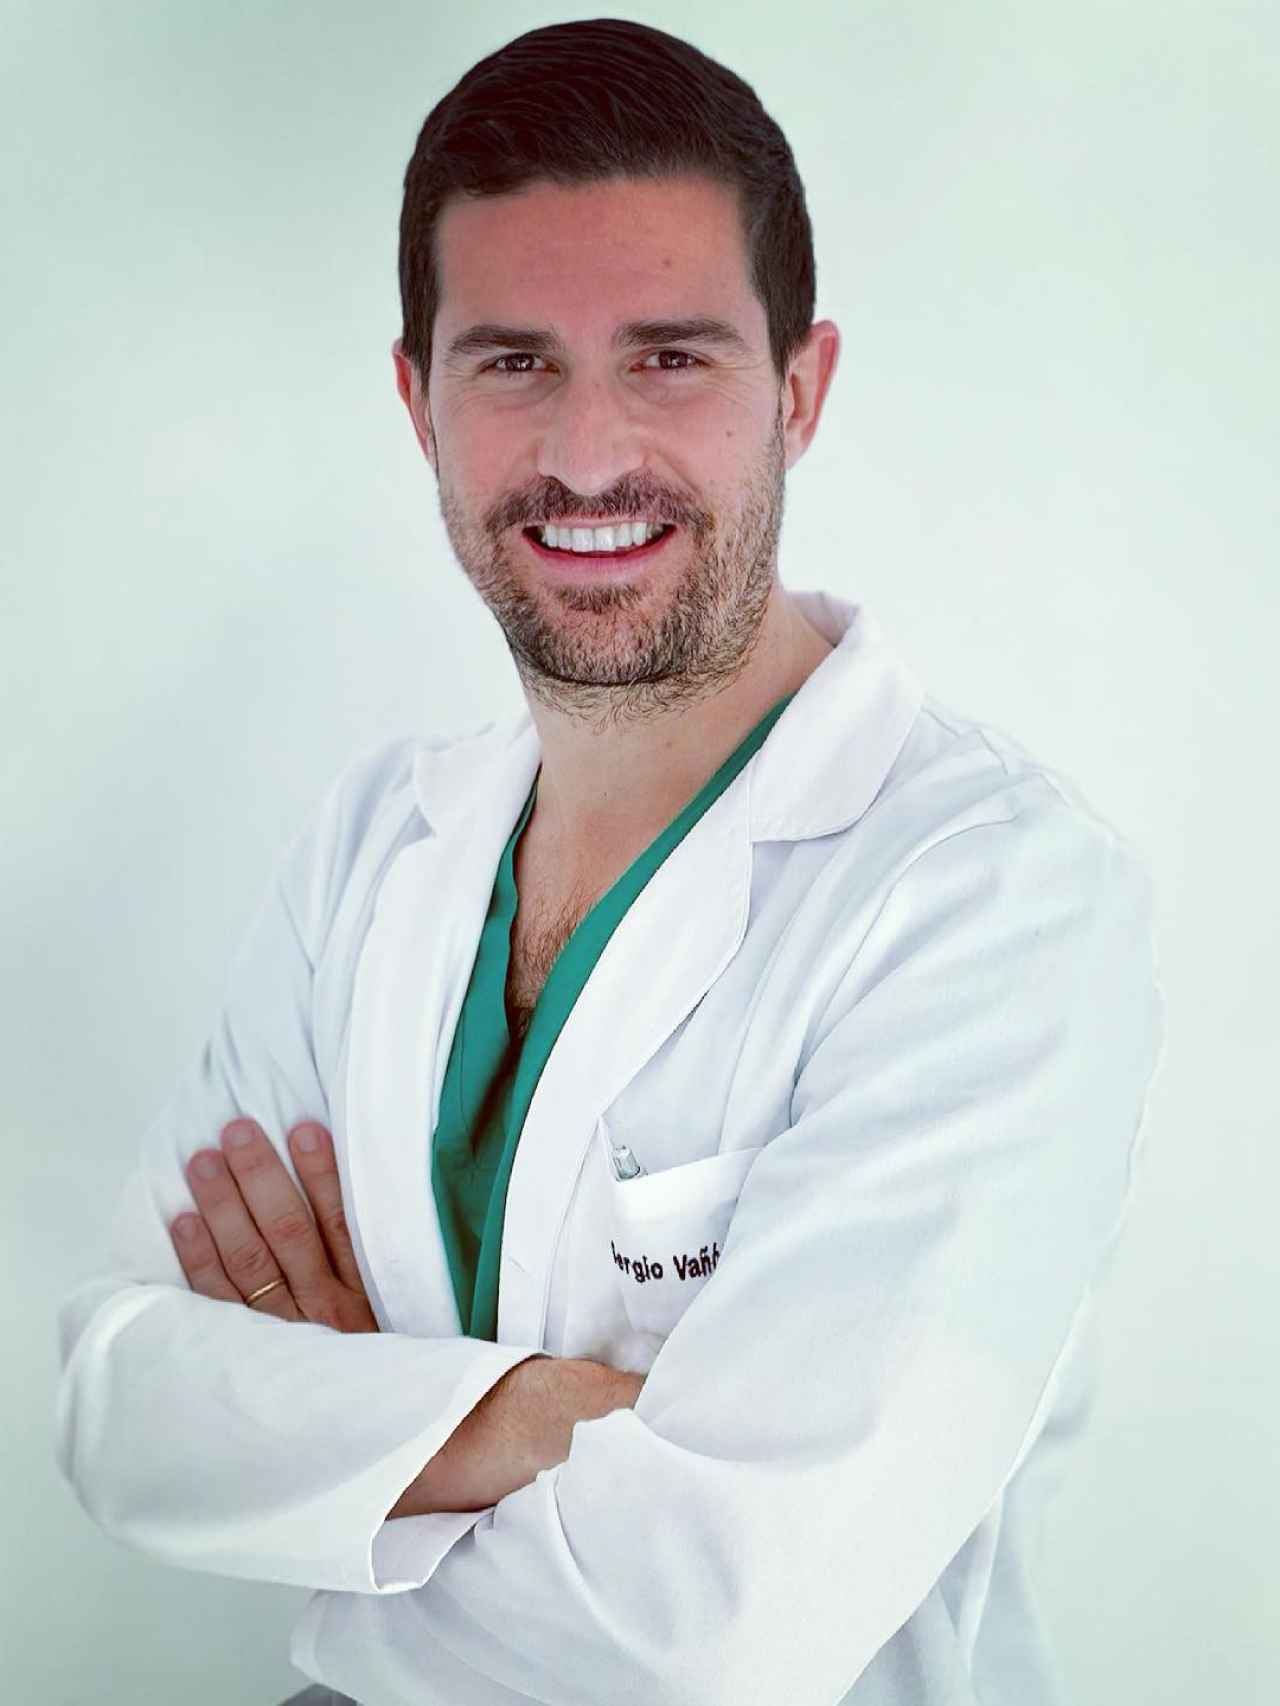 El doctor Segio Vañó Galván en una imagen compartida en su perfil de Instagram.